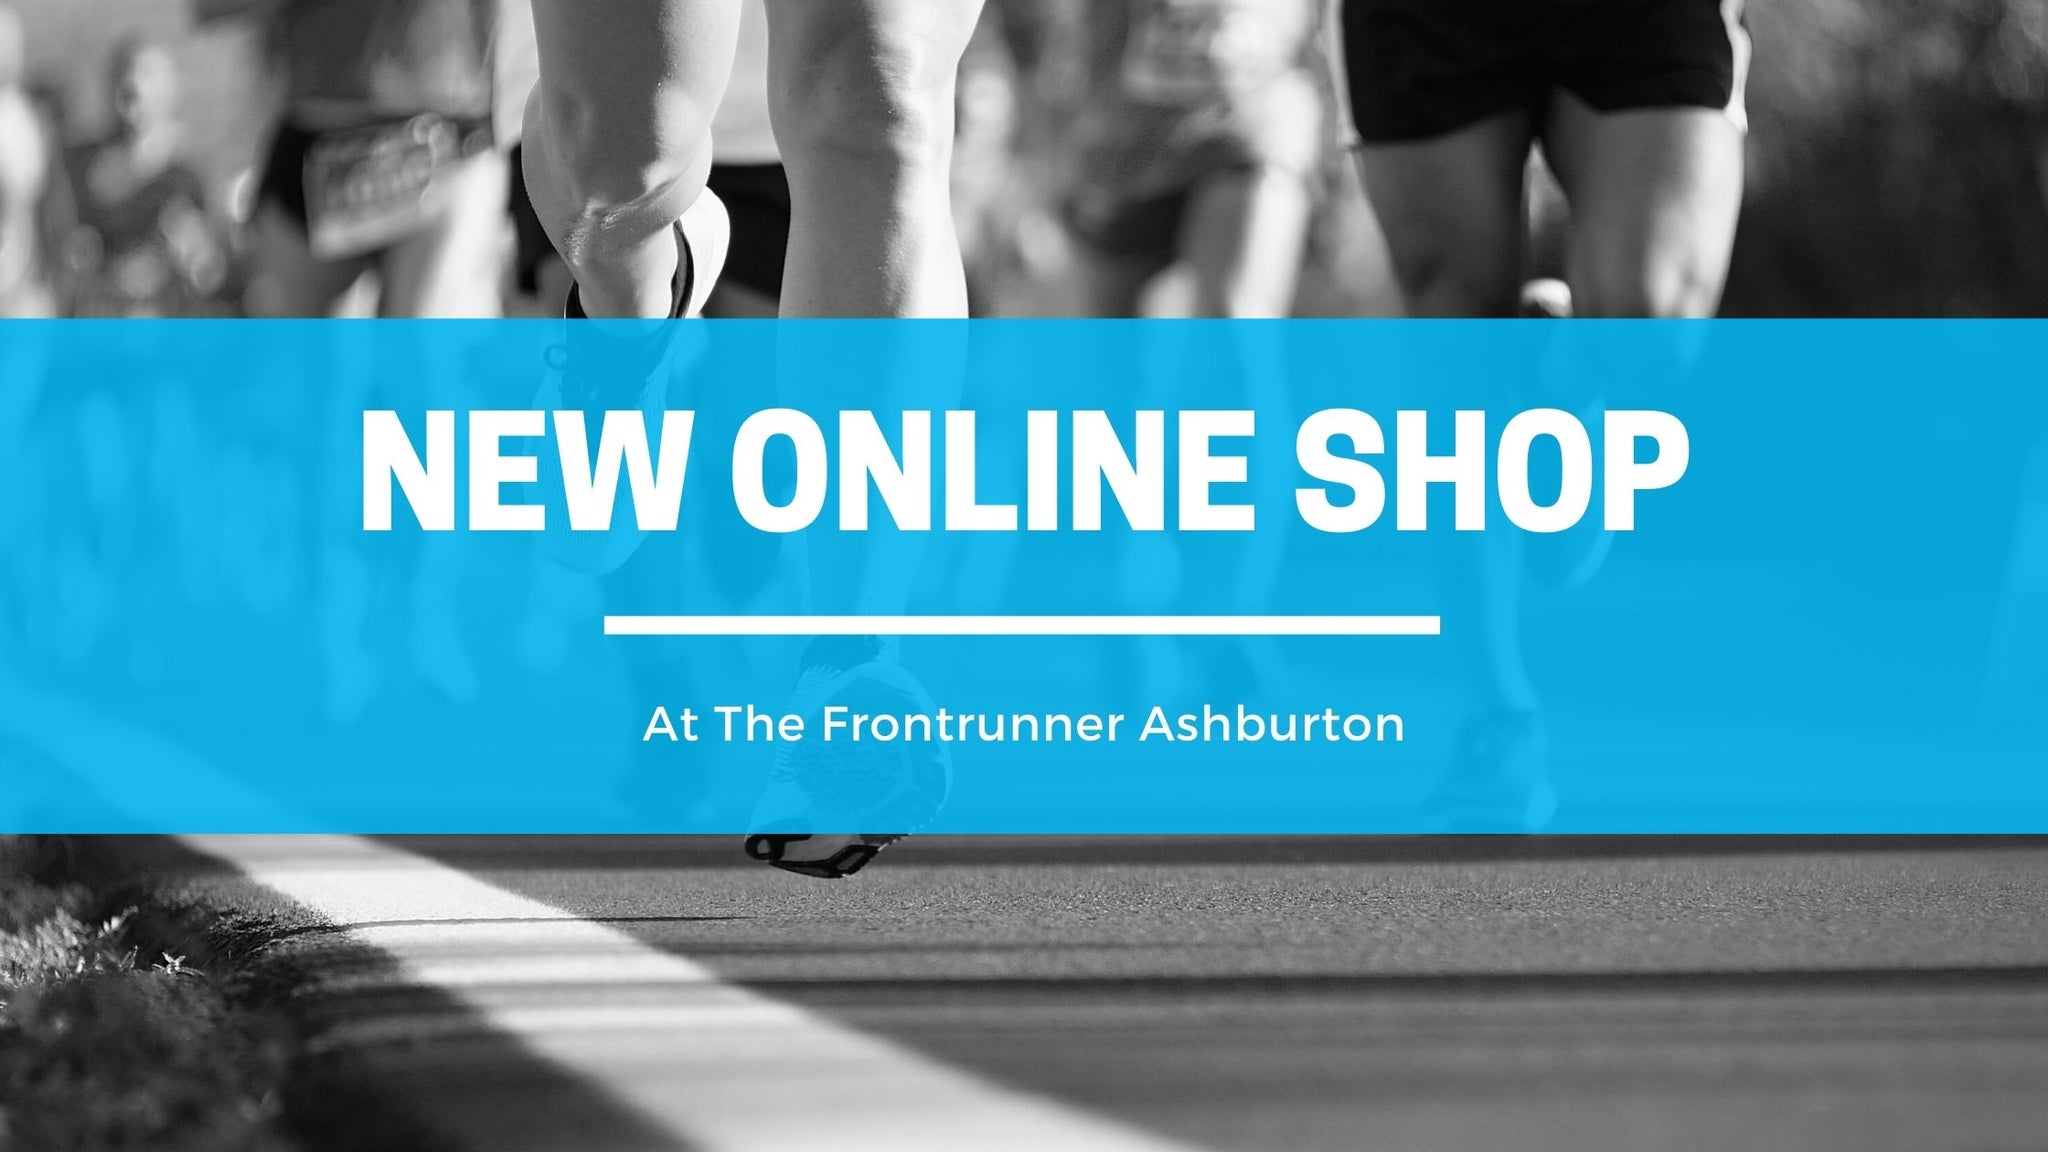 New online shop for The Frontrunner Ashburton